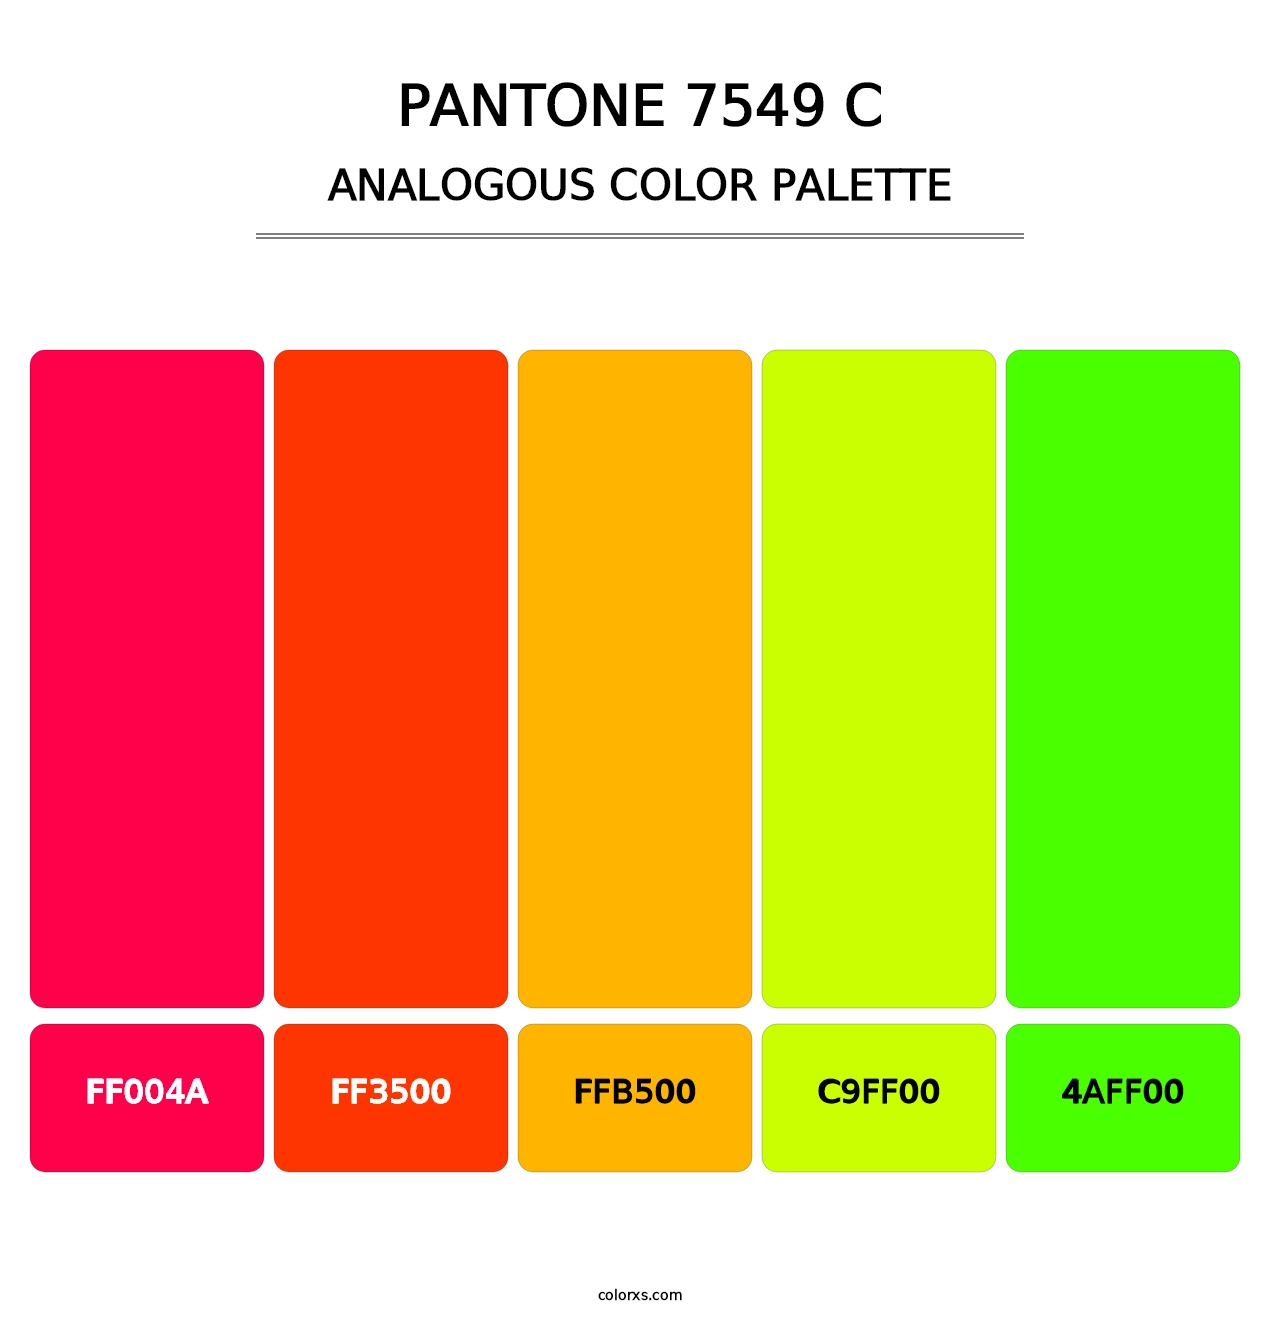 PANTONE 7549 C - Analogous Color Palette